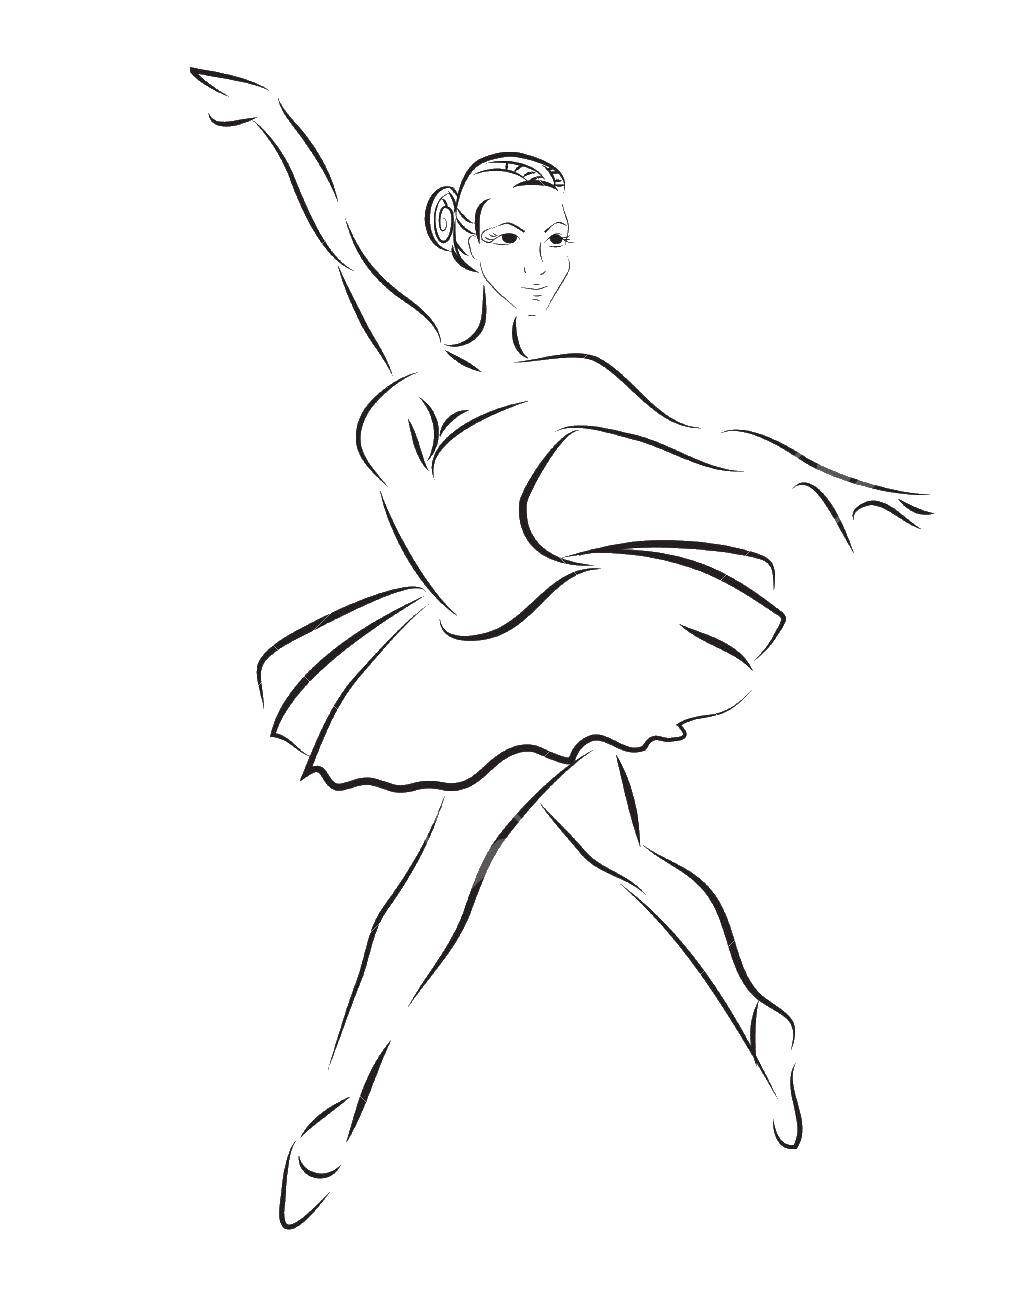 Название: Раскраска Контур балерины. Категория: контуры балерины для вырезания. Теги: контур, балерина, пачка.